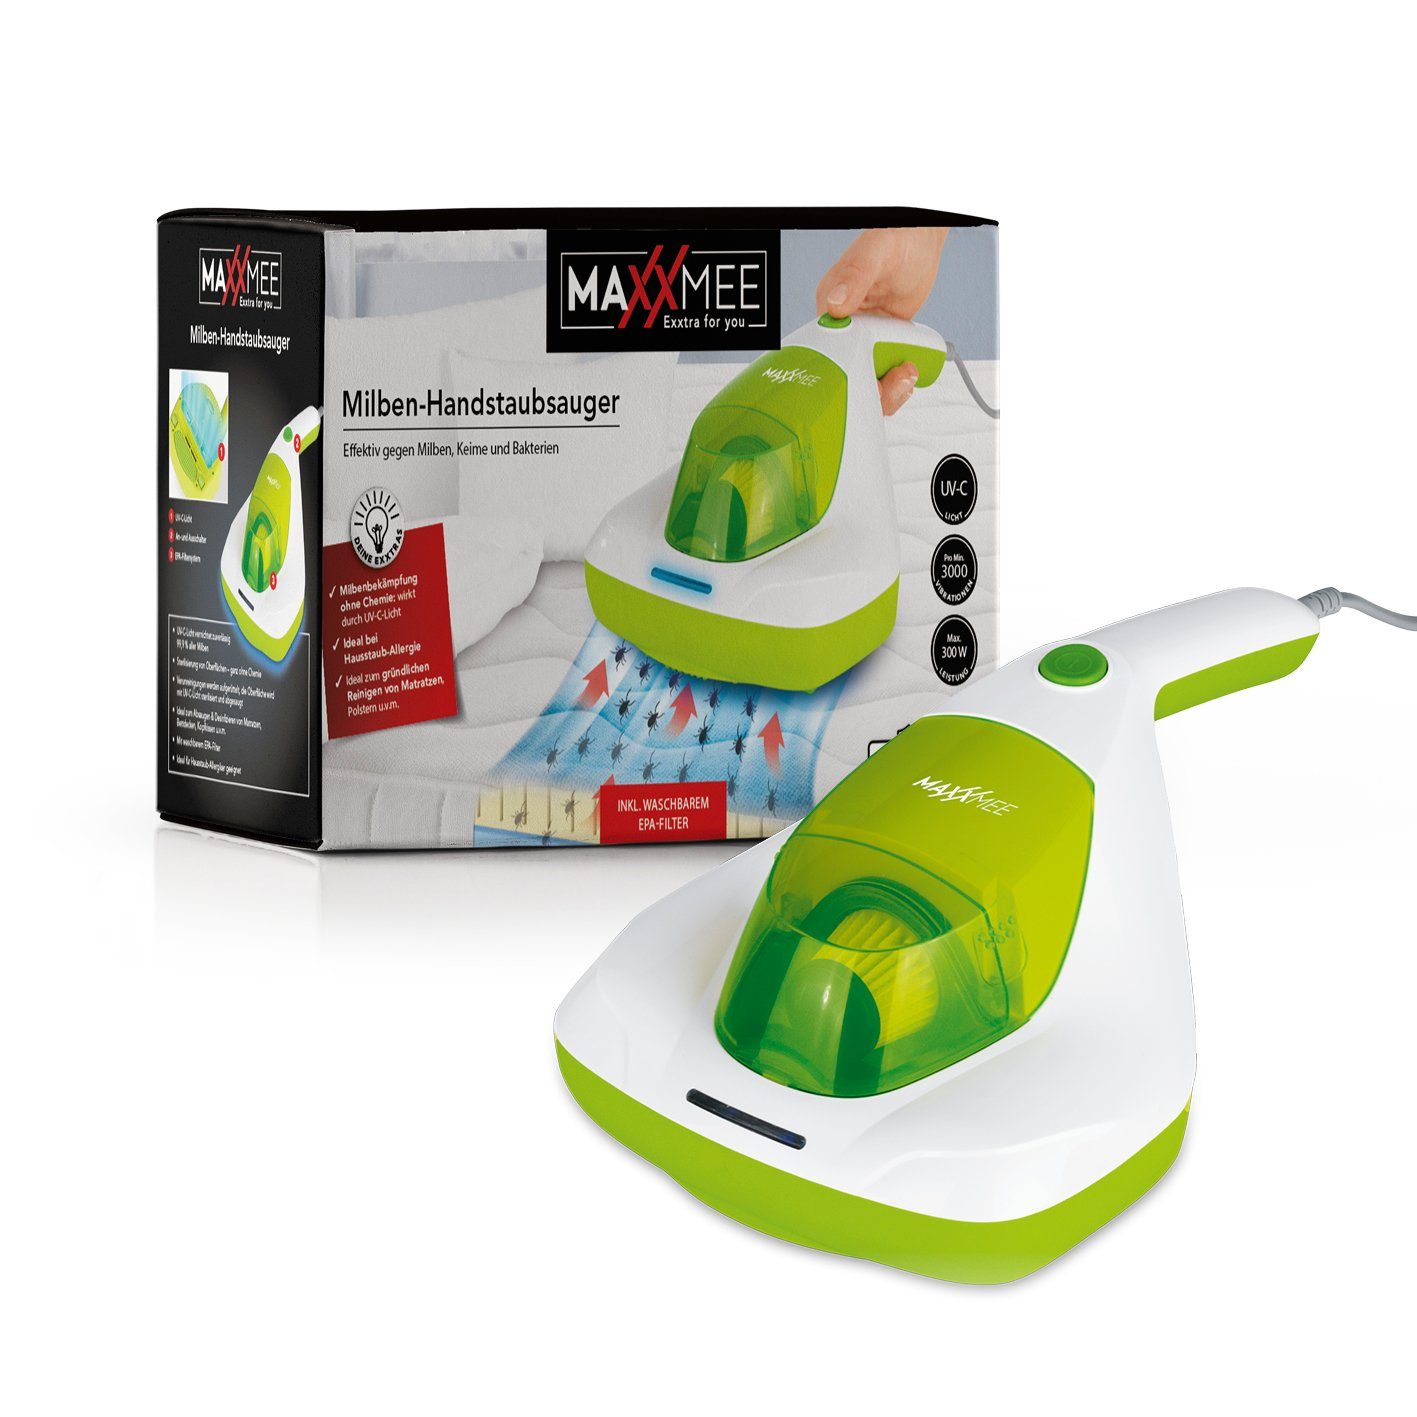 MAXXMEE Matratzenreinigungsgerät Milben-Handstaubsauger Kompakt UV-C Licht 300W